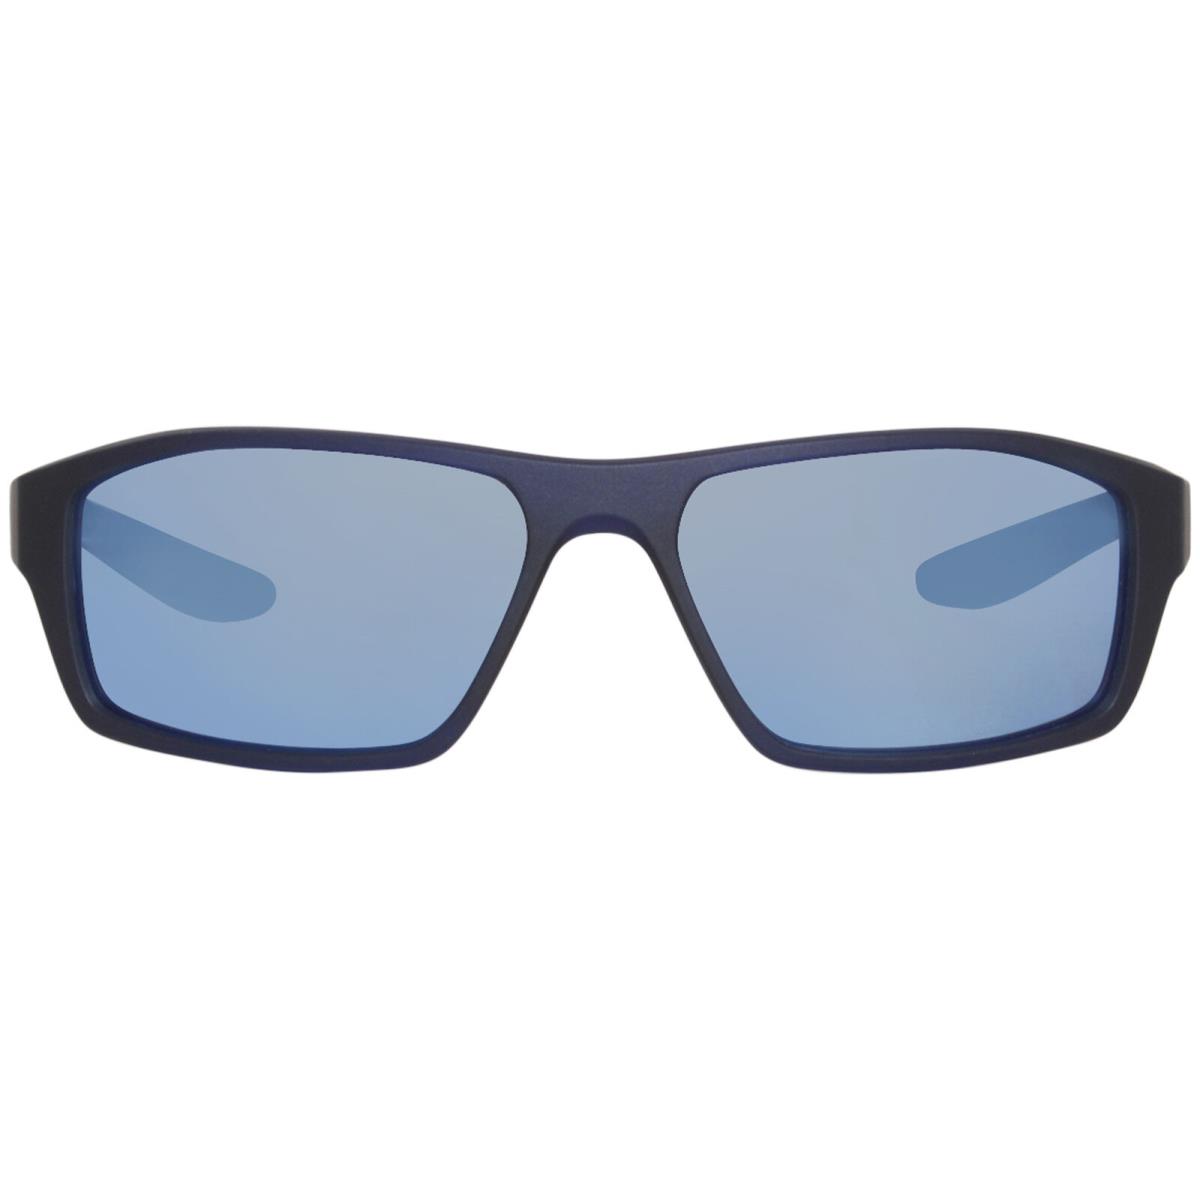 Nike Brazen Shadow-m FJ1987 451 Sunglasses Matte Dk Obsidian/frozen Blue Mirror - Frame: Black, Lens: Blue